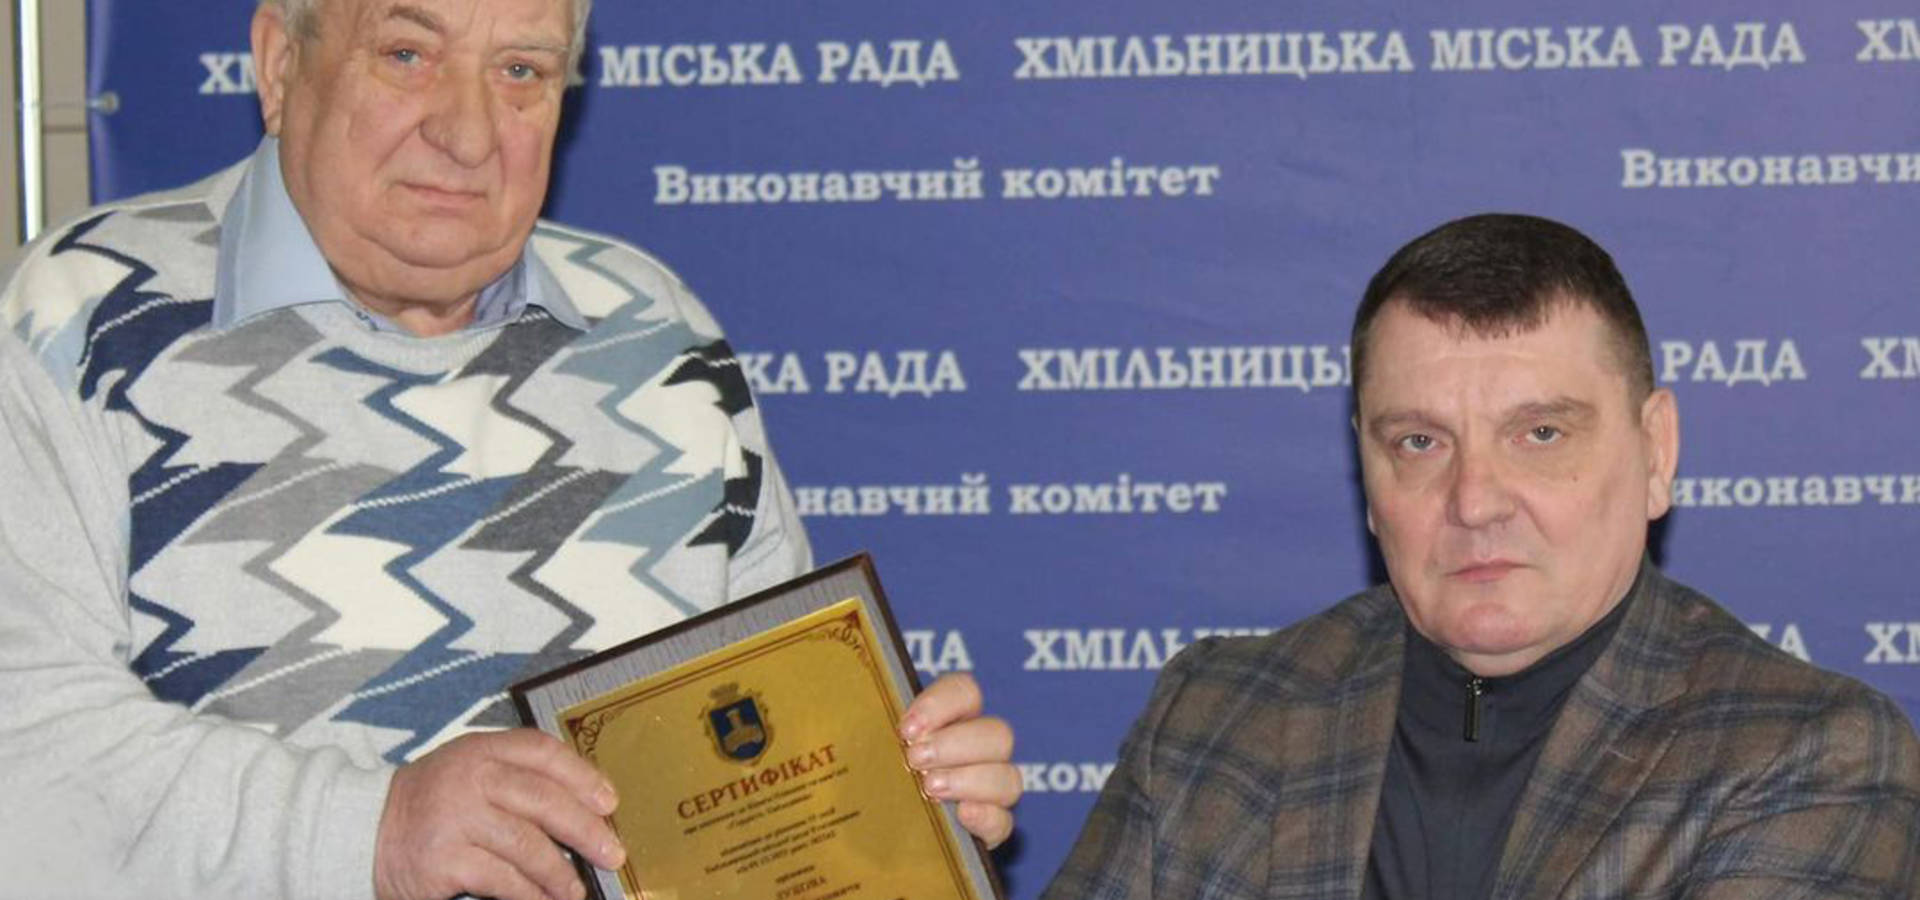  Микола Юрчишин вручив Дмитру Лукову сертифікат про занесення його прізвища до Книги пошани «Гордість Хмільника»